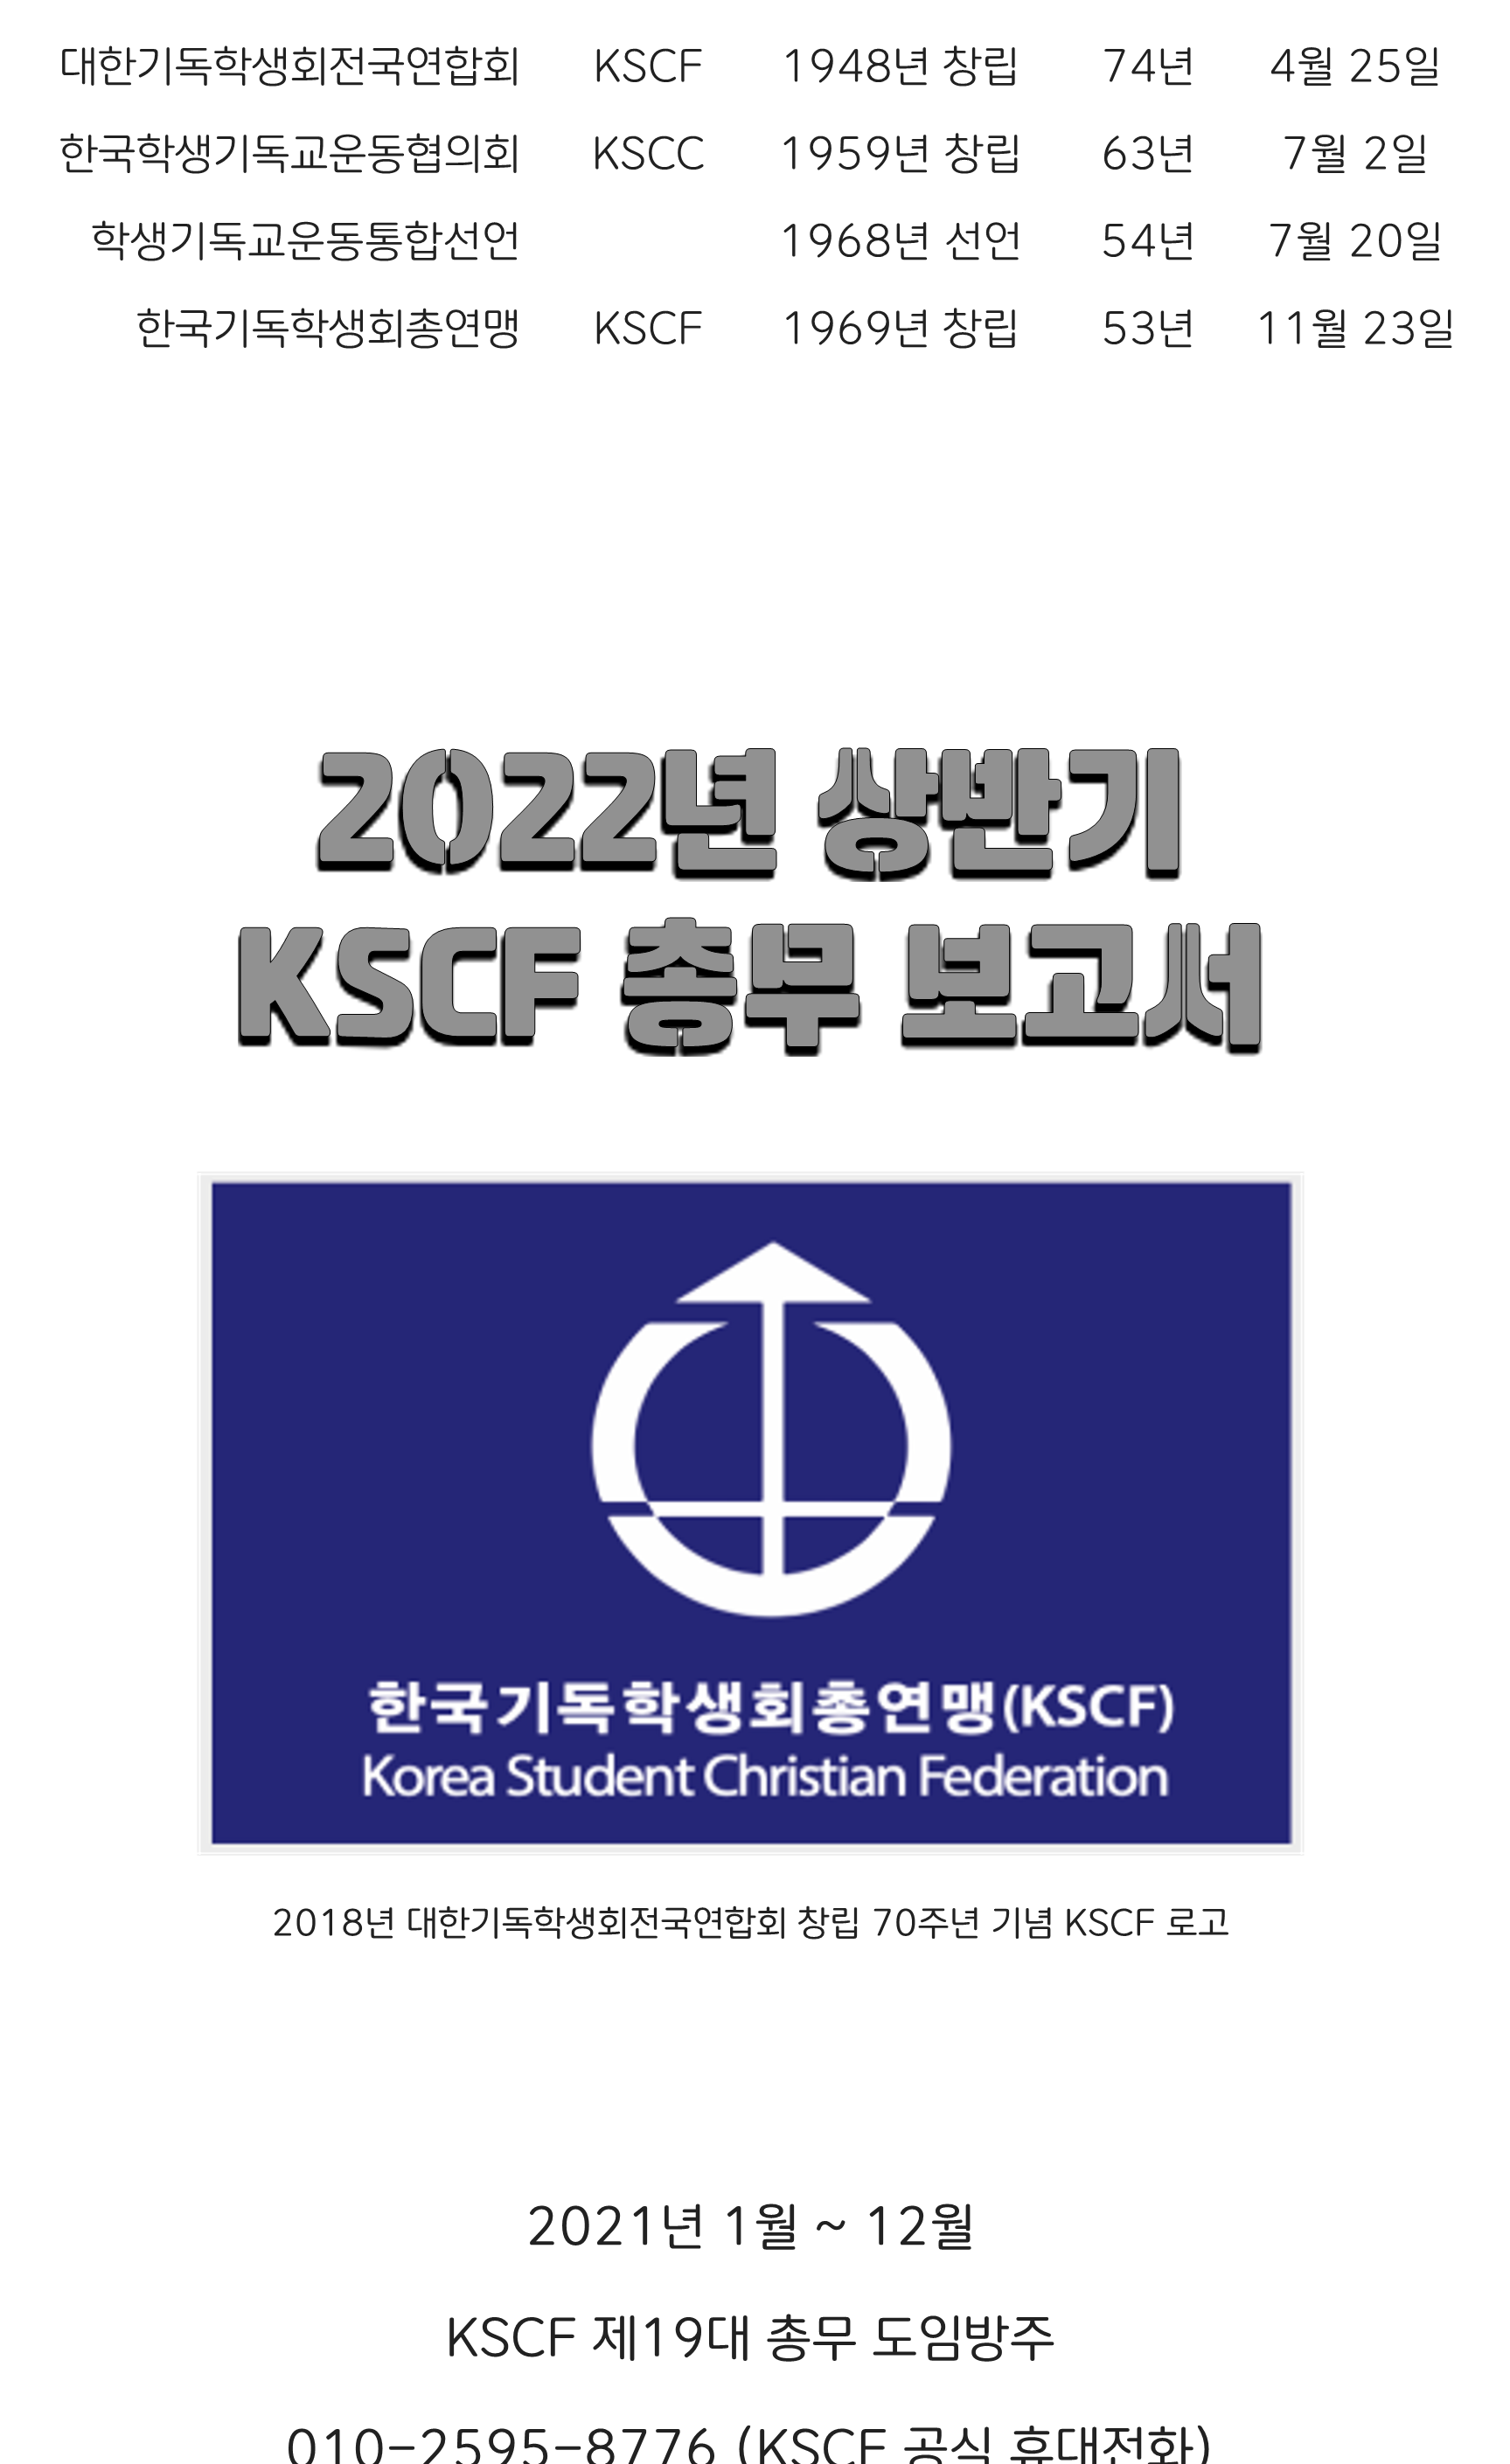 2022-3-30-2022년 상반기 KSCF 총무 보고서-이사명단수정-최종_1.png